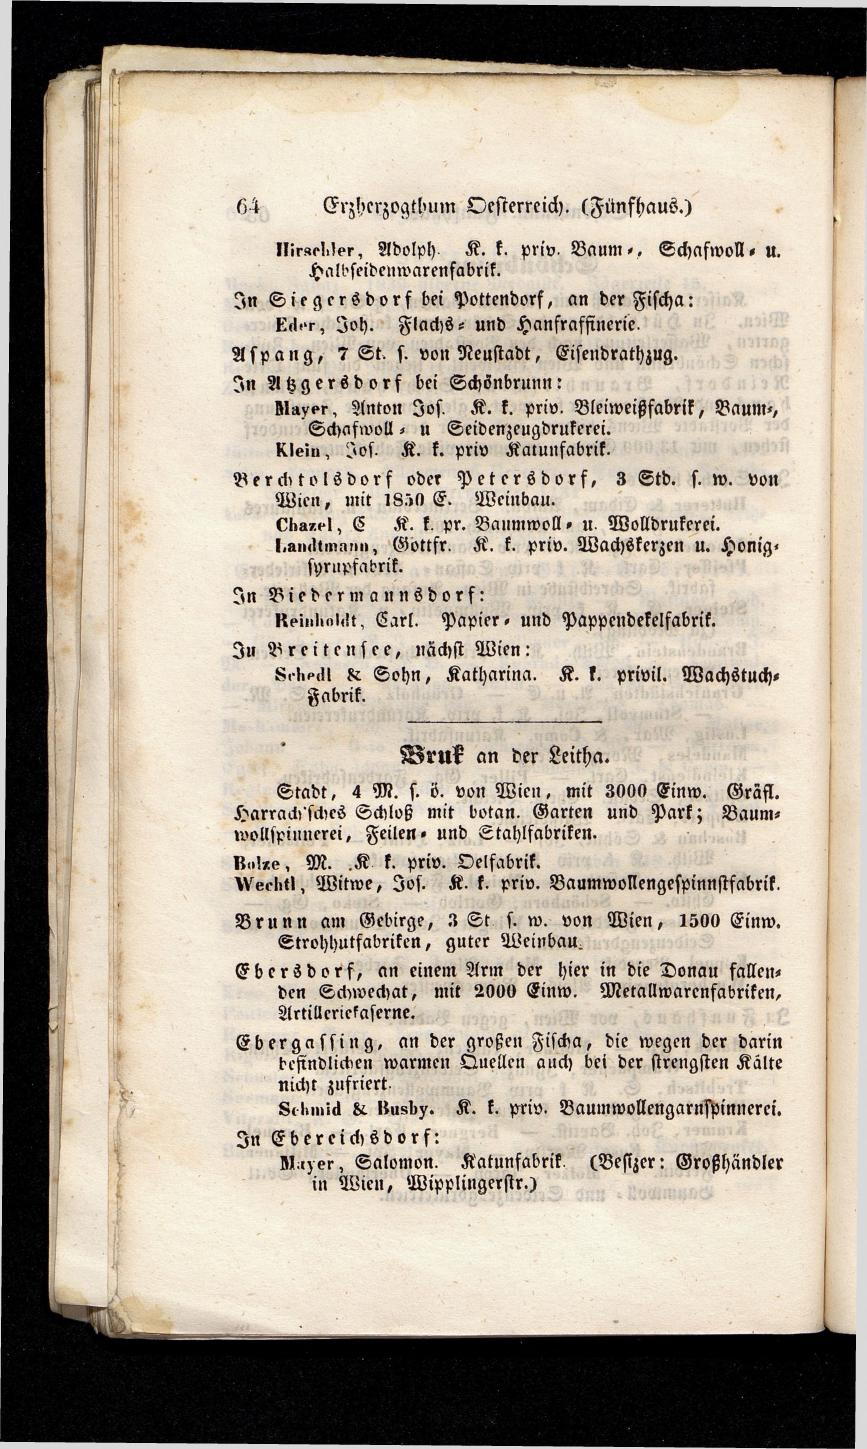 Grosses Adressbuch der Kaufleute. No. 13. Oesterreich ober u. unter der Enns 1844 - Seite 68